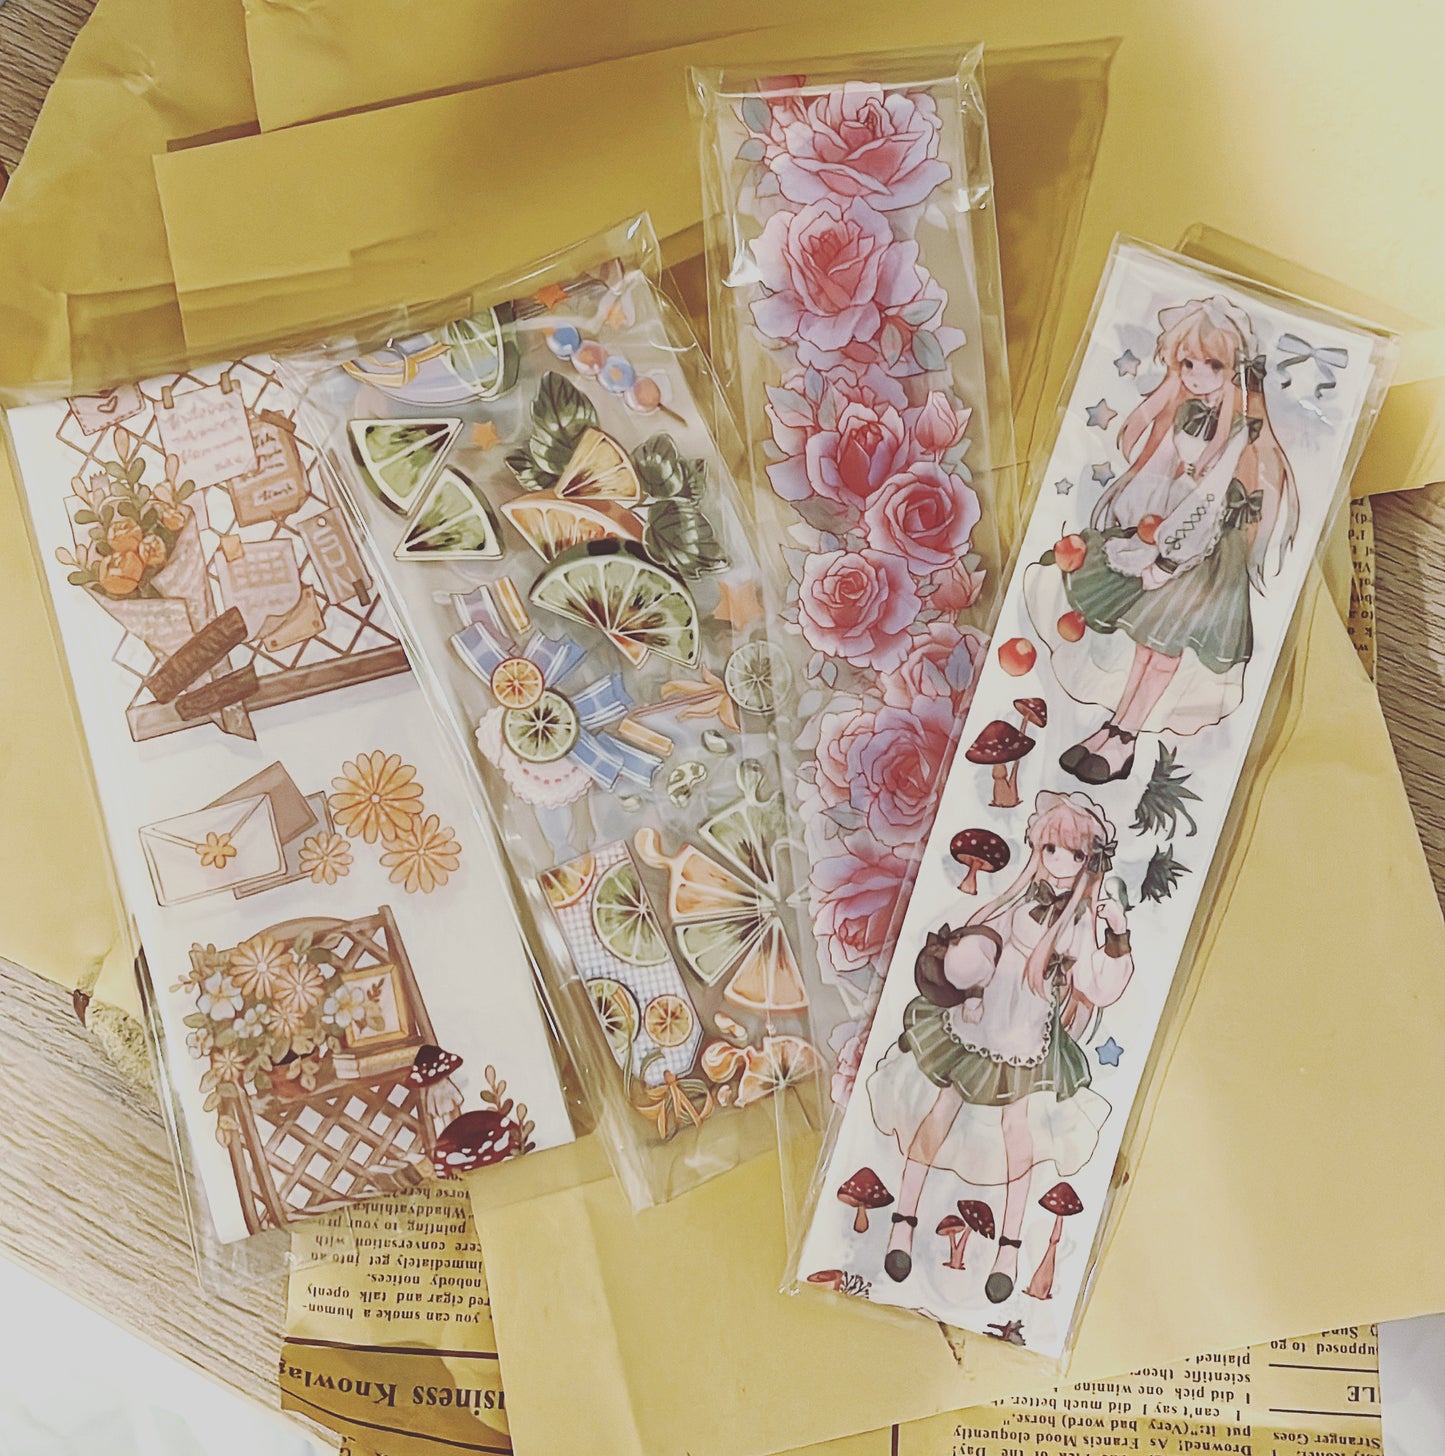 Free Shipping]Washi/PET tape Sample, Variety Masking Tape for creativ –  ChocoStationery